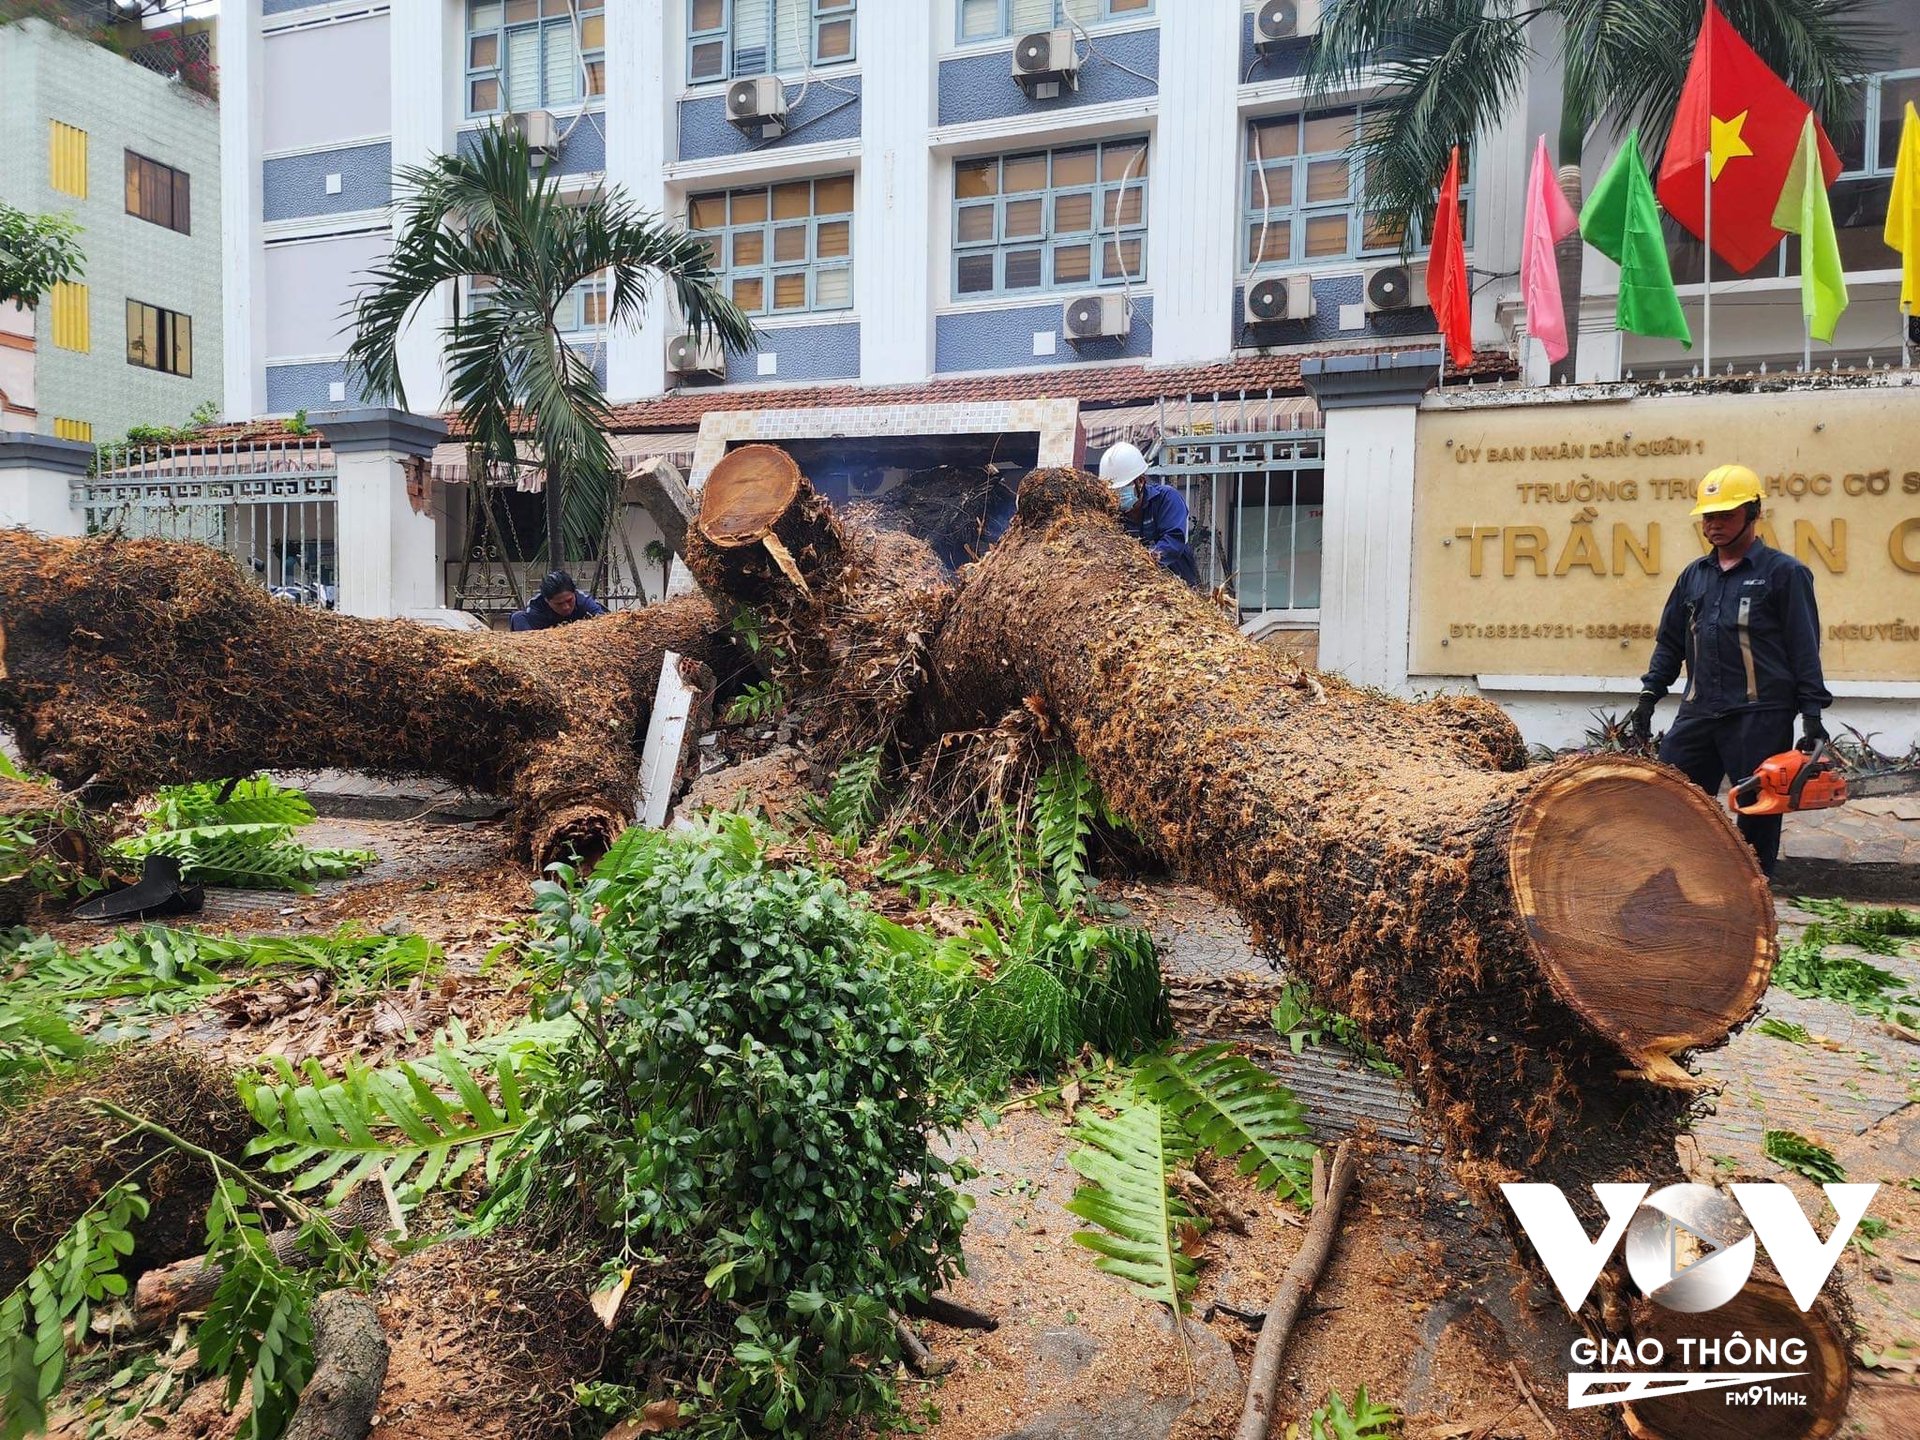 Ngày 03/4, cây xanh ngã đổ tại trường THCS Trần Văn Ơn, quận 1 (TP.HCM) khiến nhiều người bị thương. Ảnh: Hồng Lĩnh